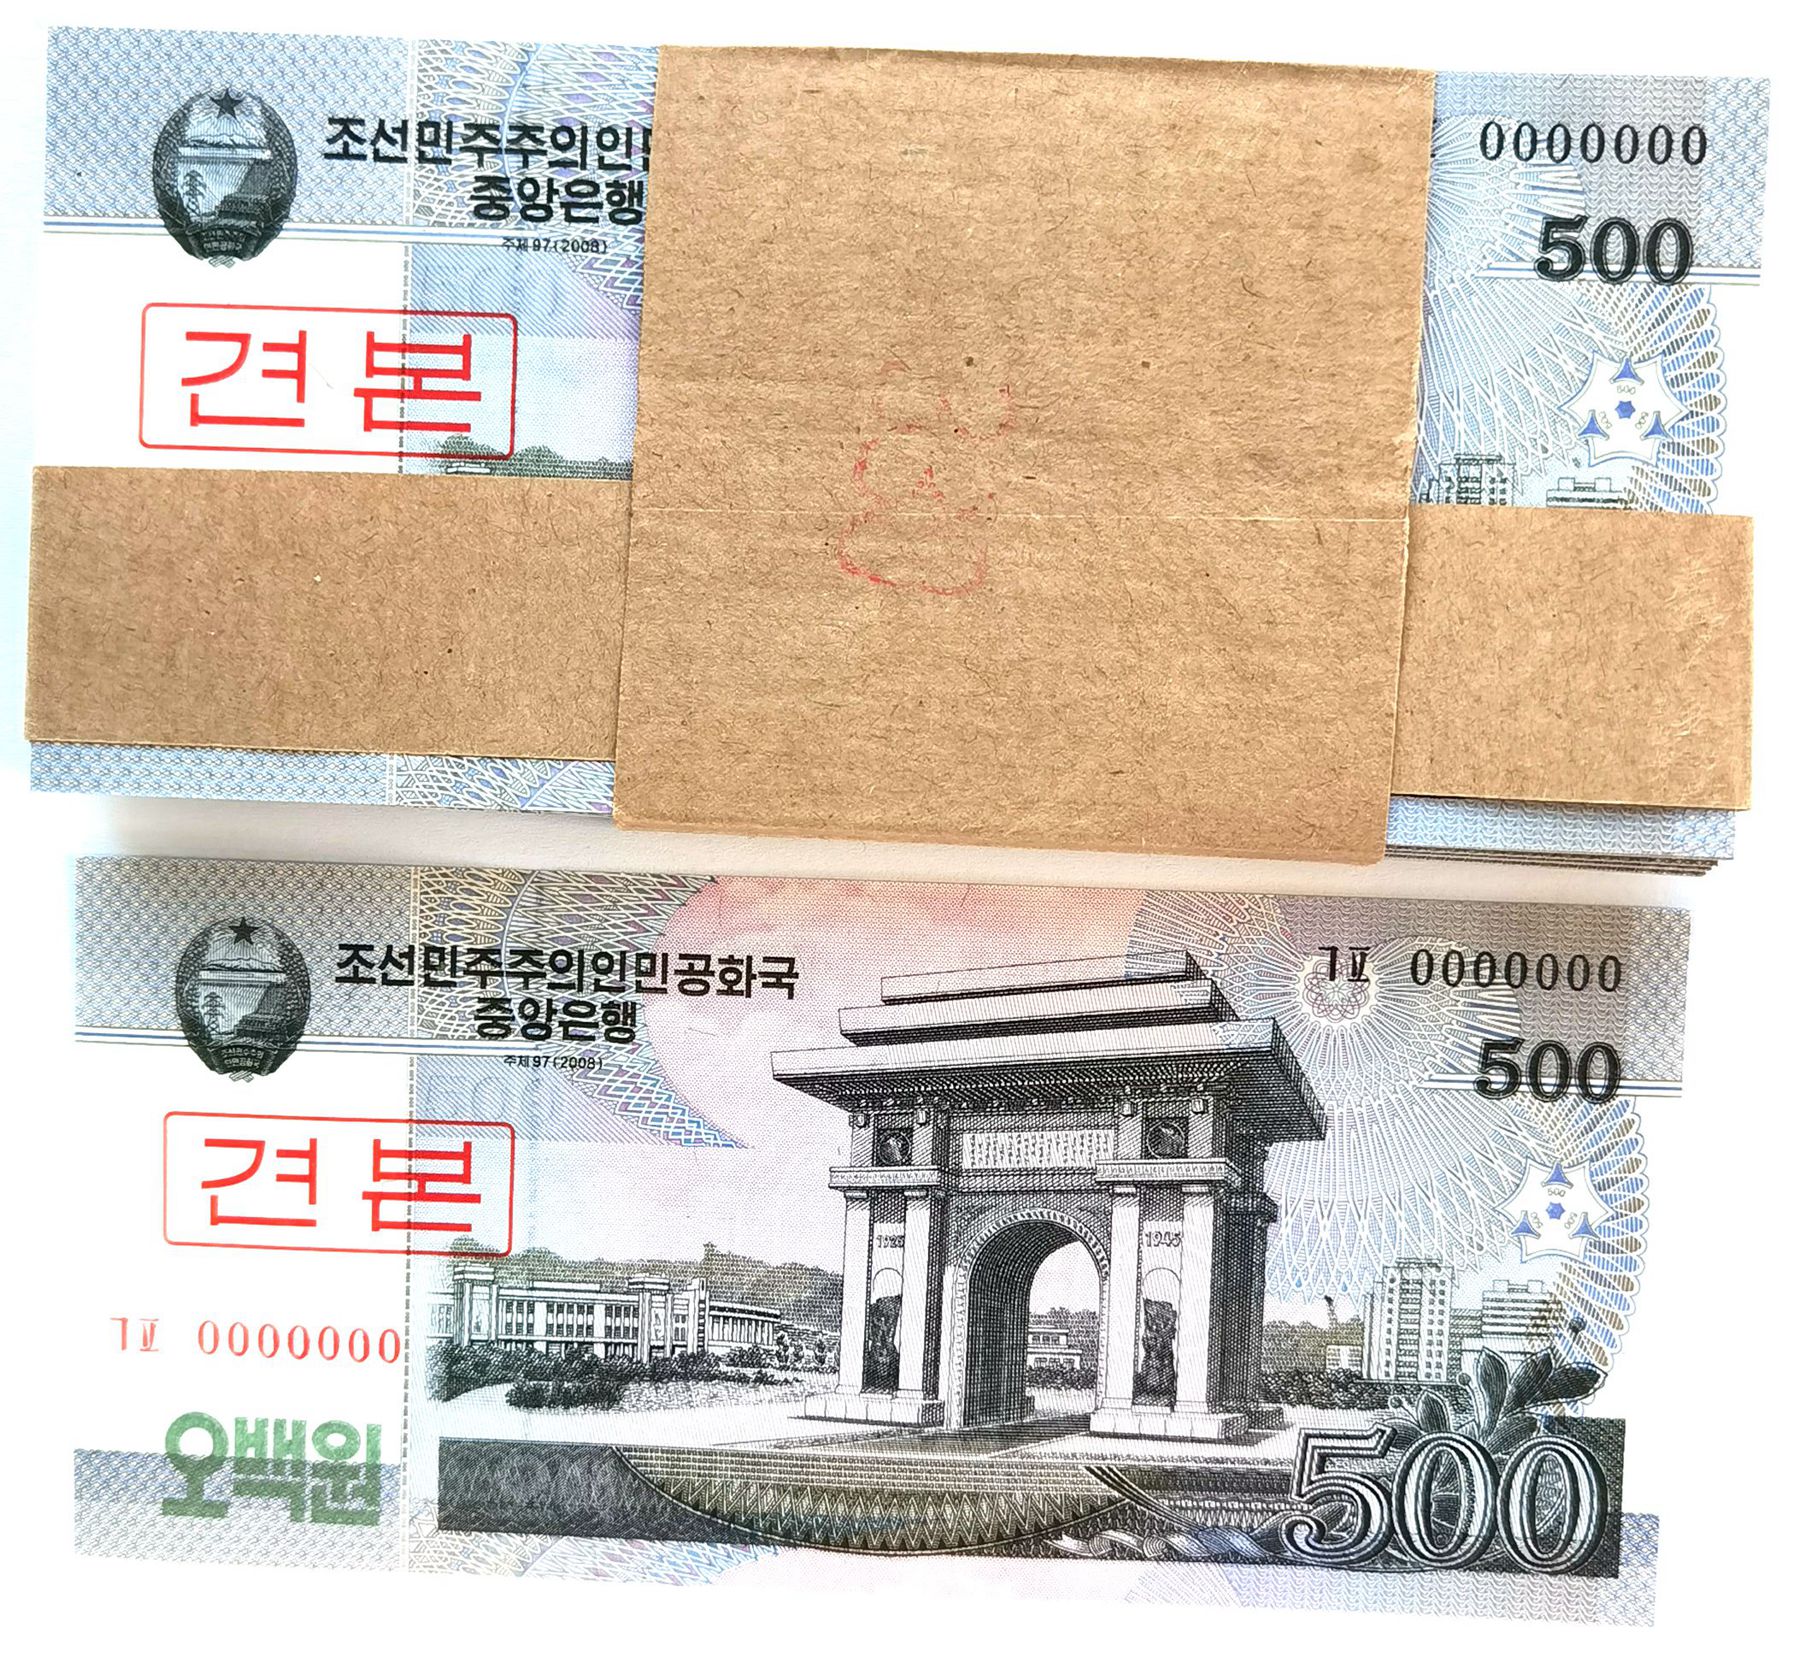 L1325, Bundle 100 Pcs, S Korea 2008 Specimen 500 Won Banknote, Series 0000000